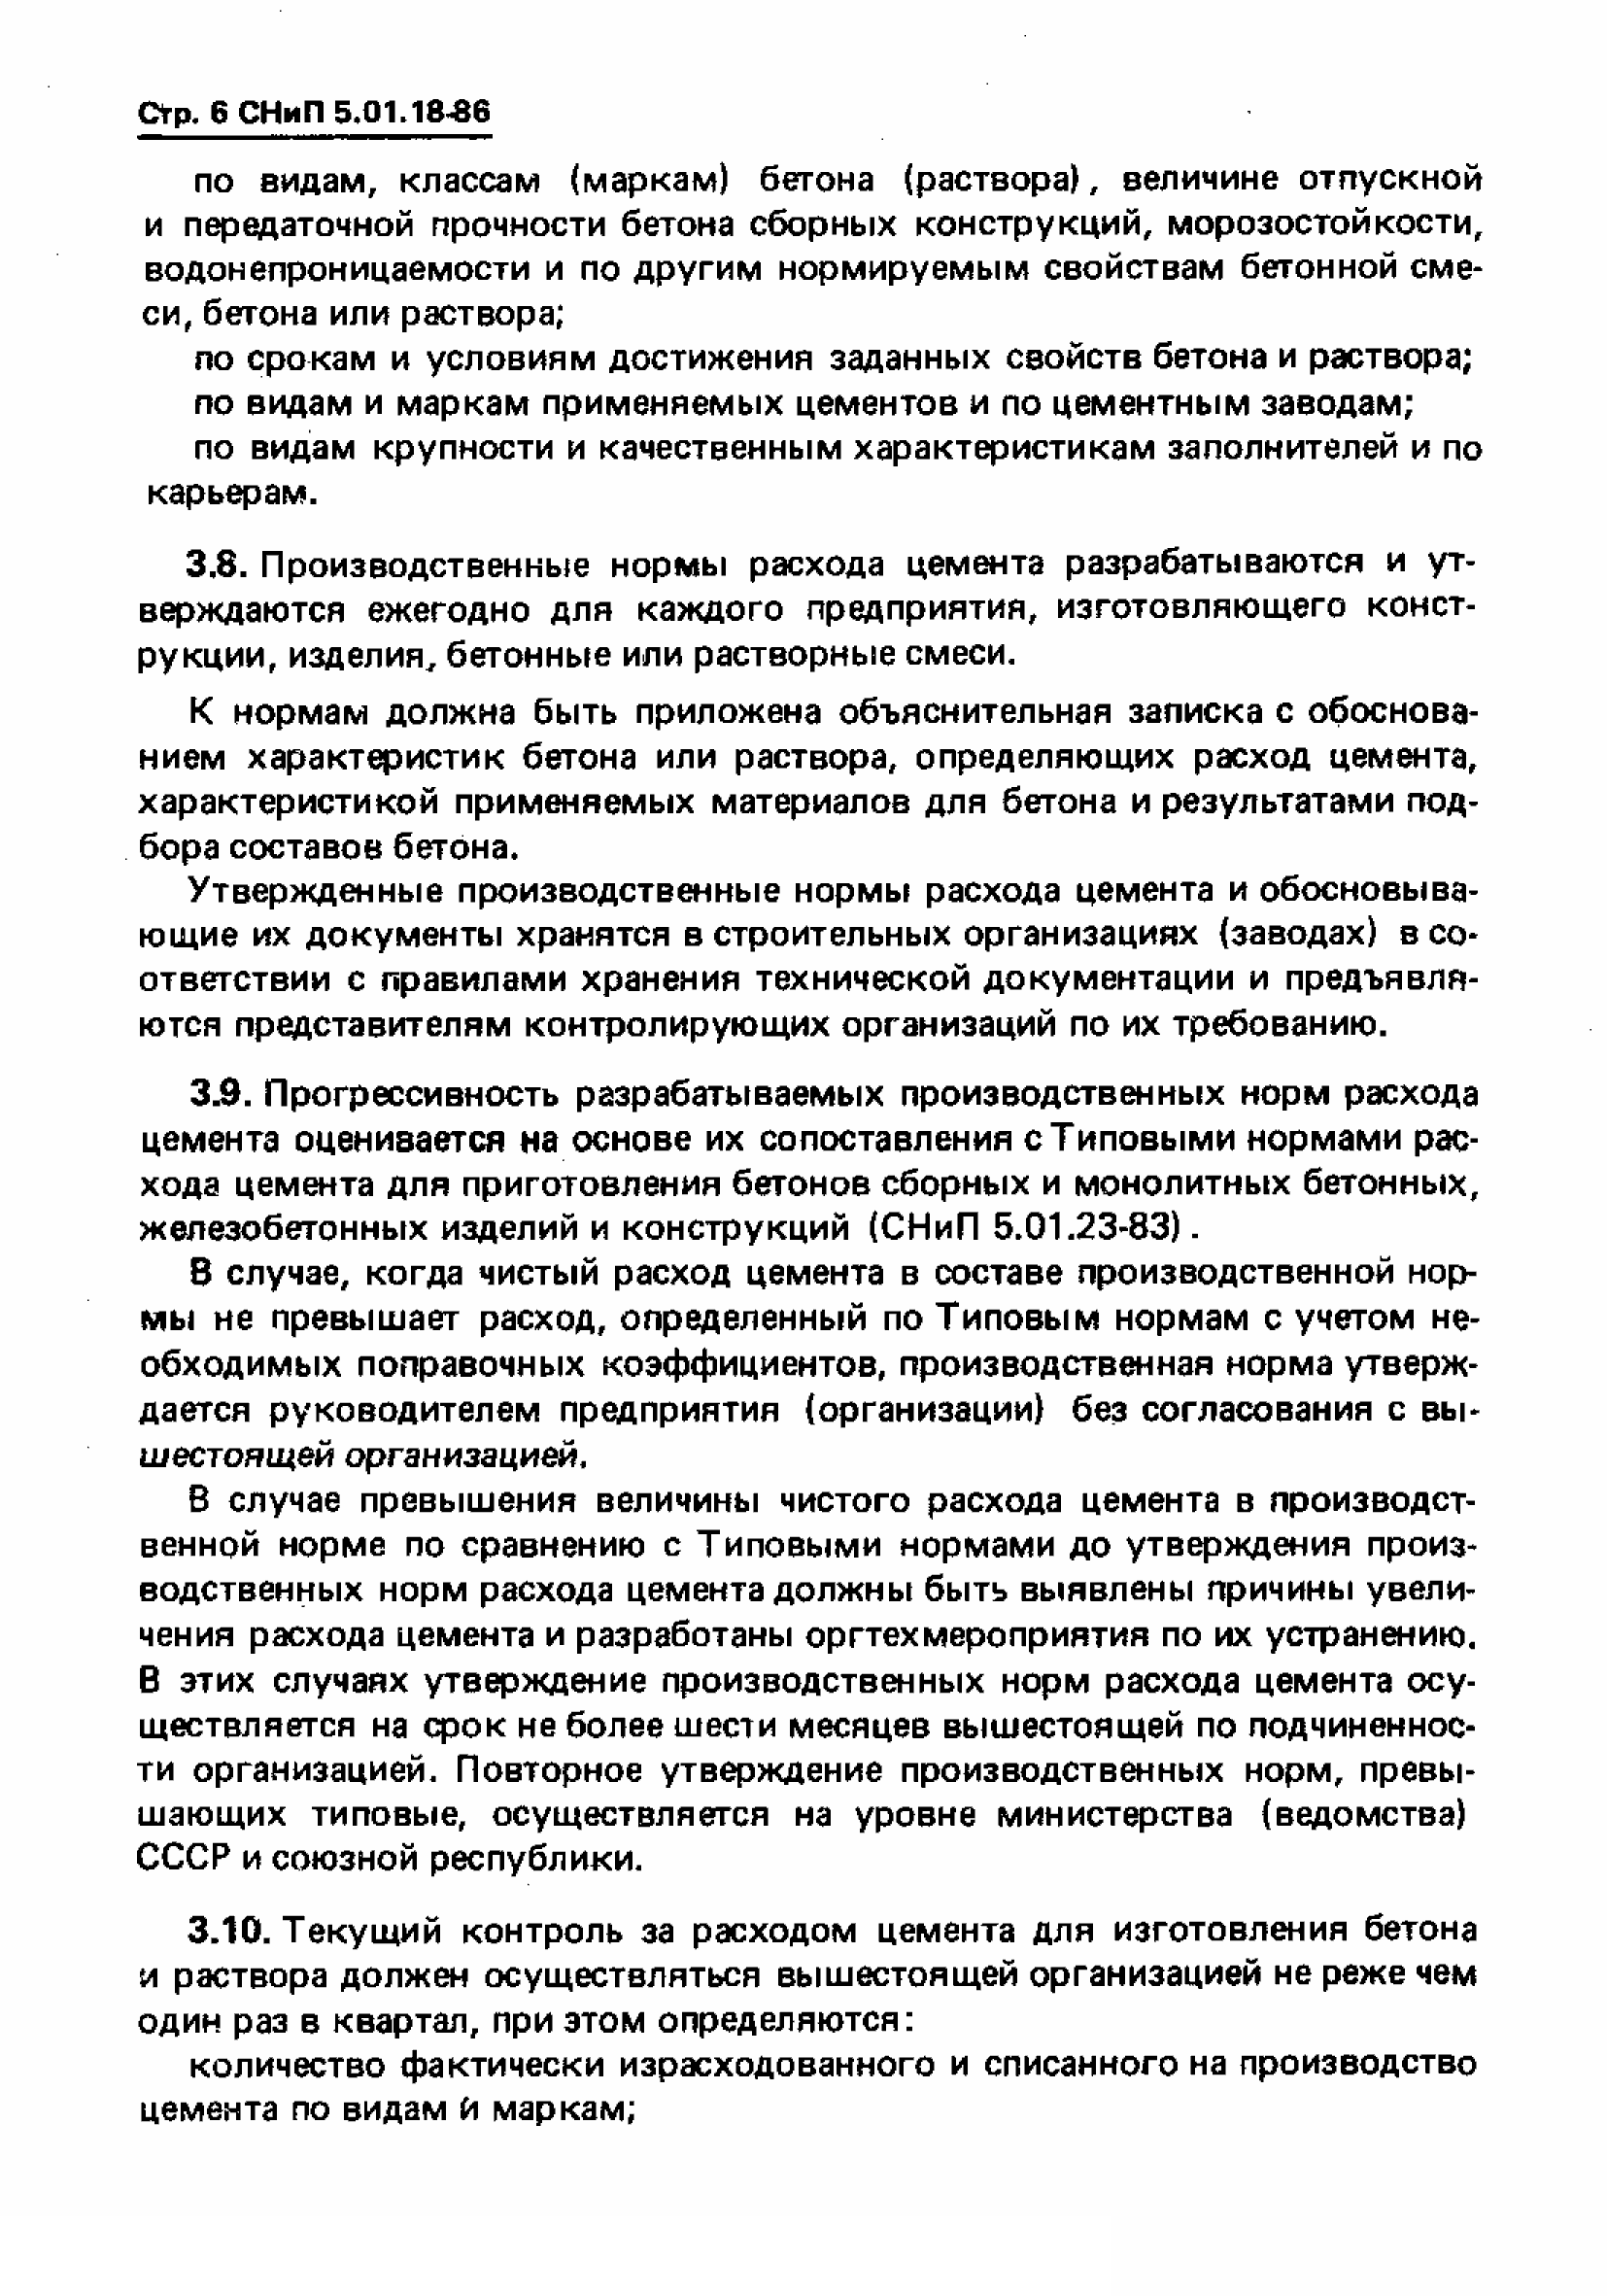 СНиП 5.01.18-86